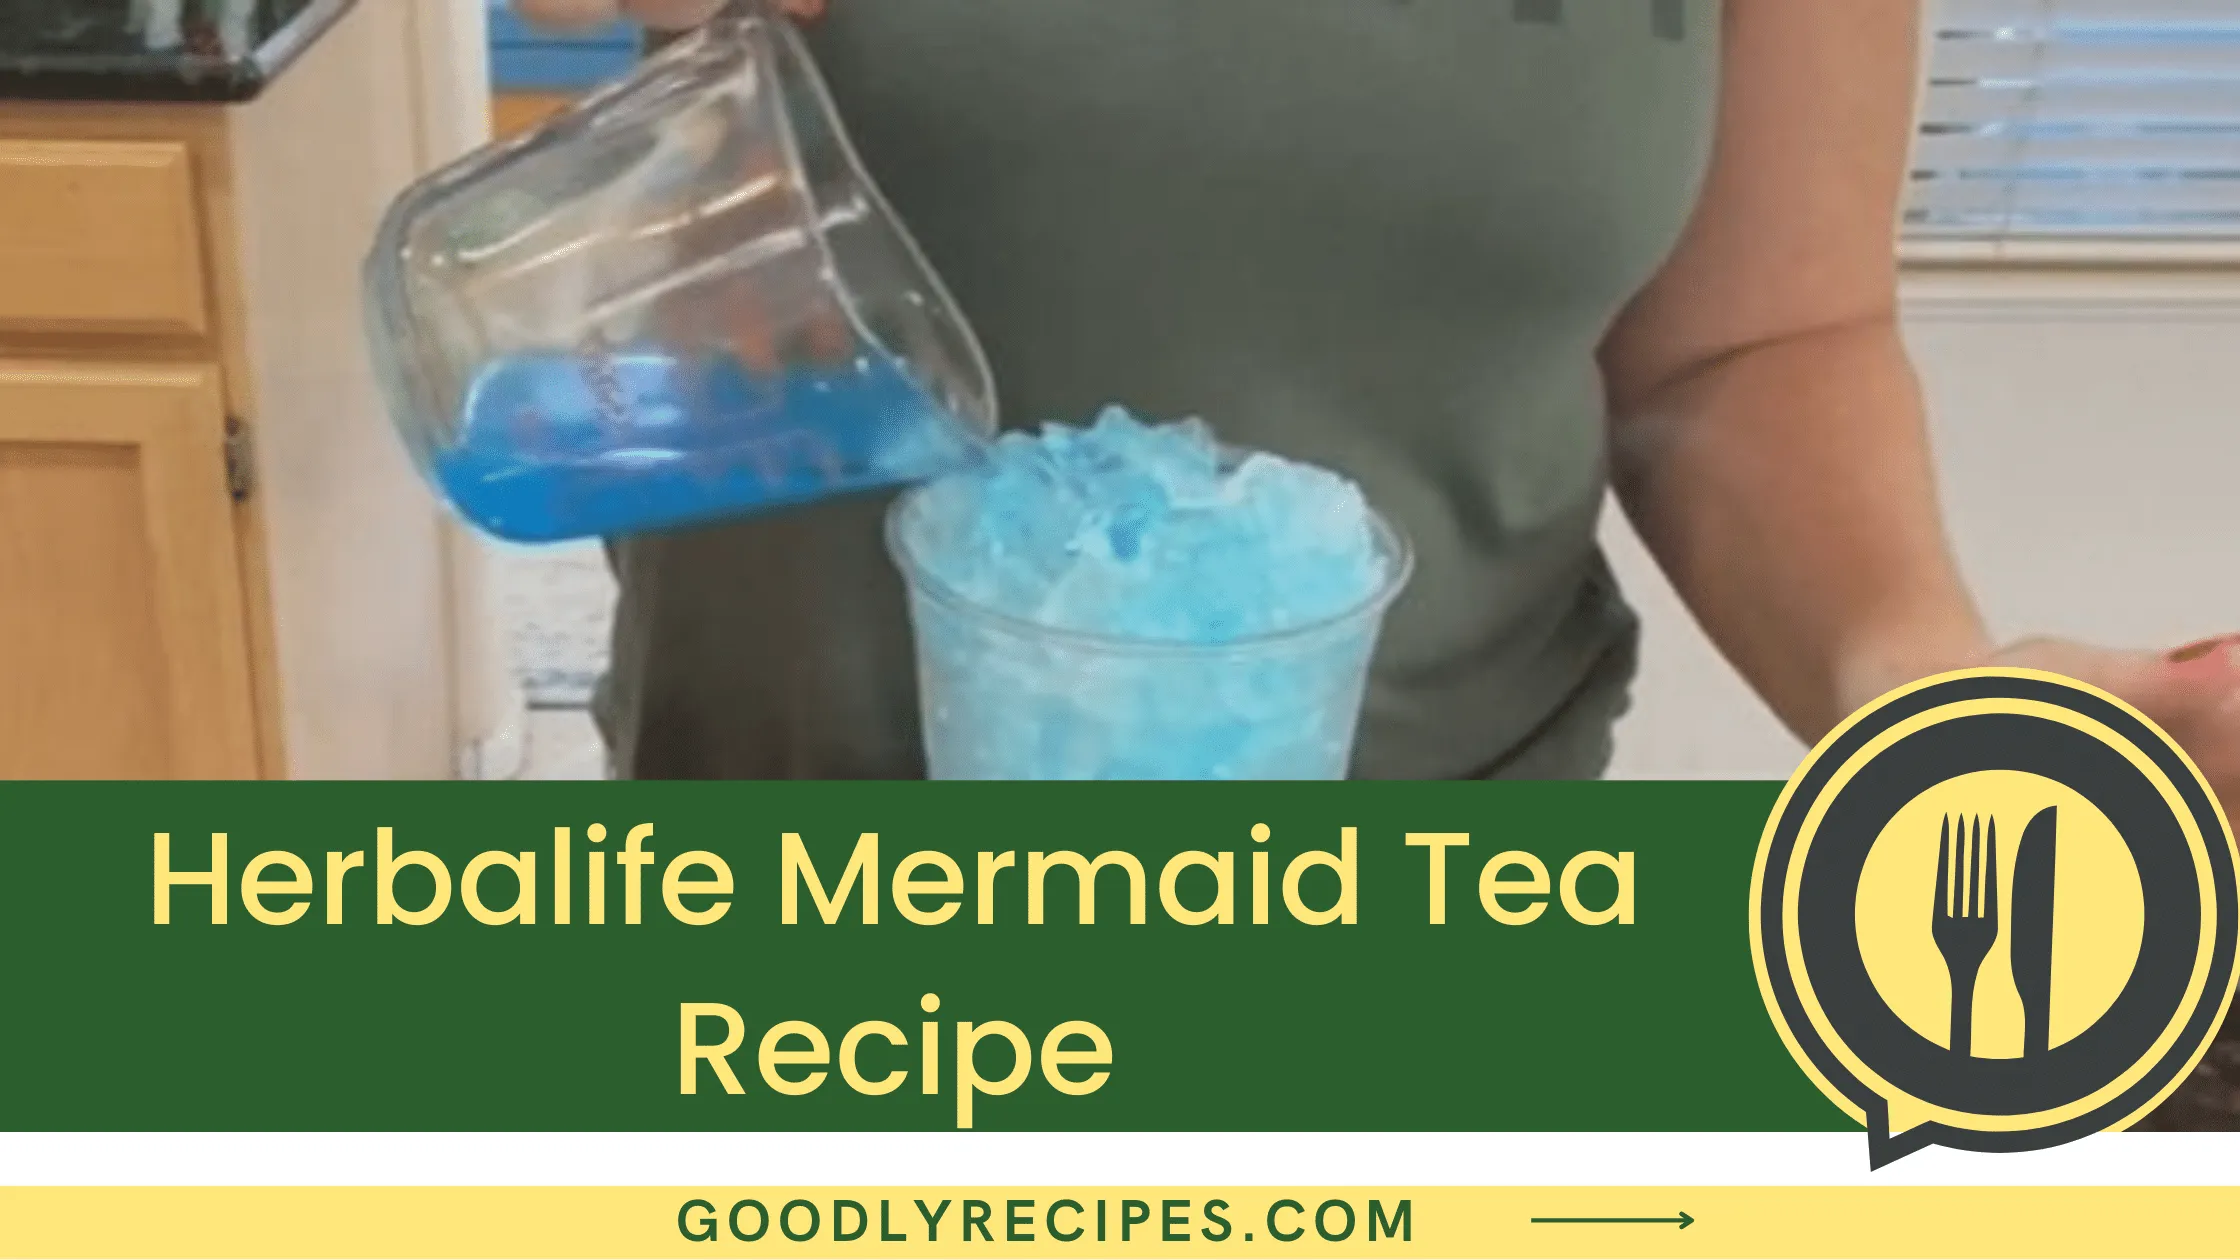 What is Herbalife Mermaid Tea?